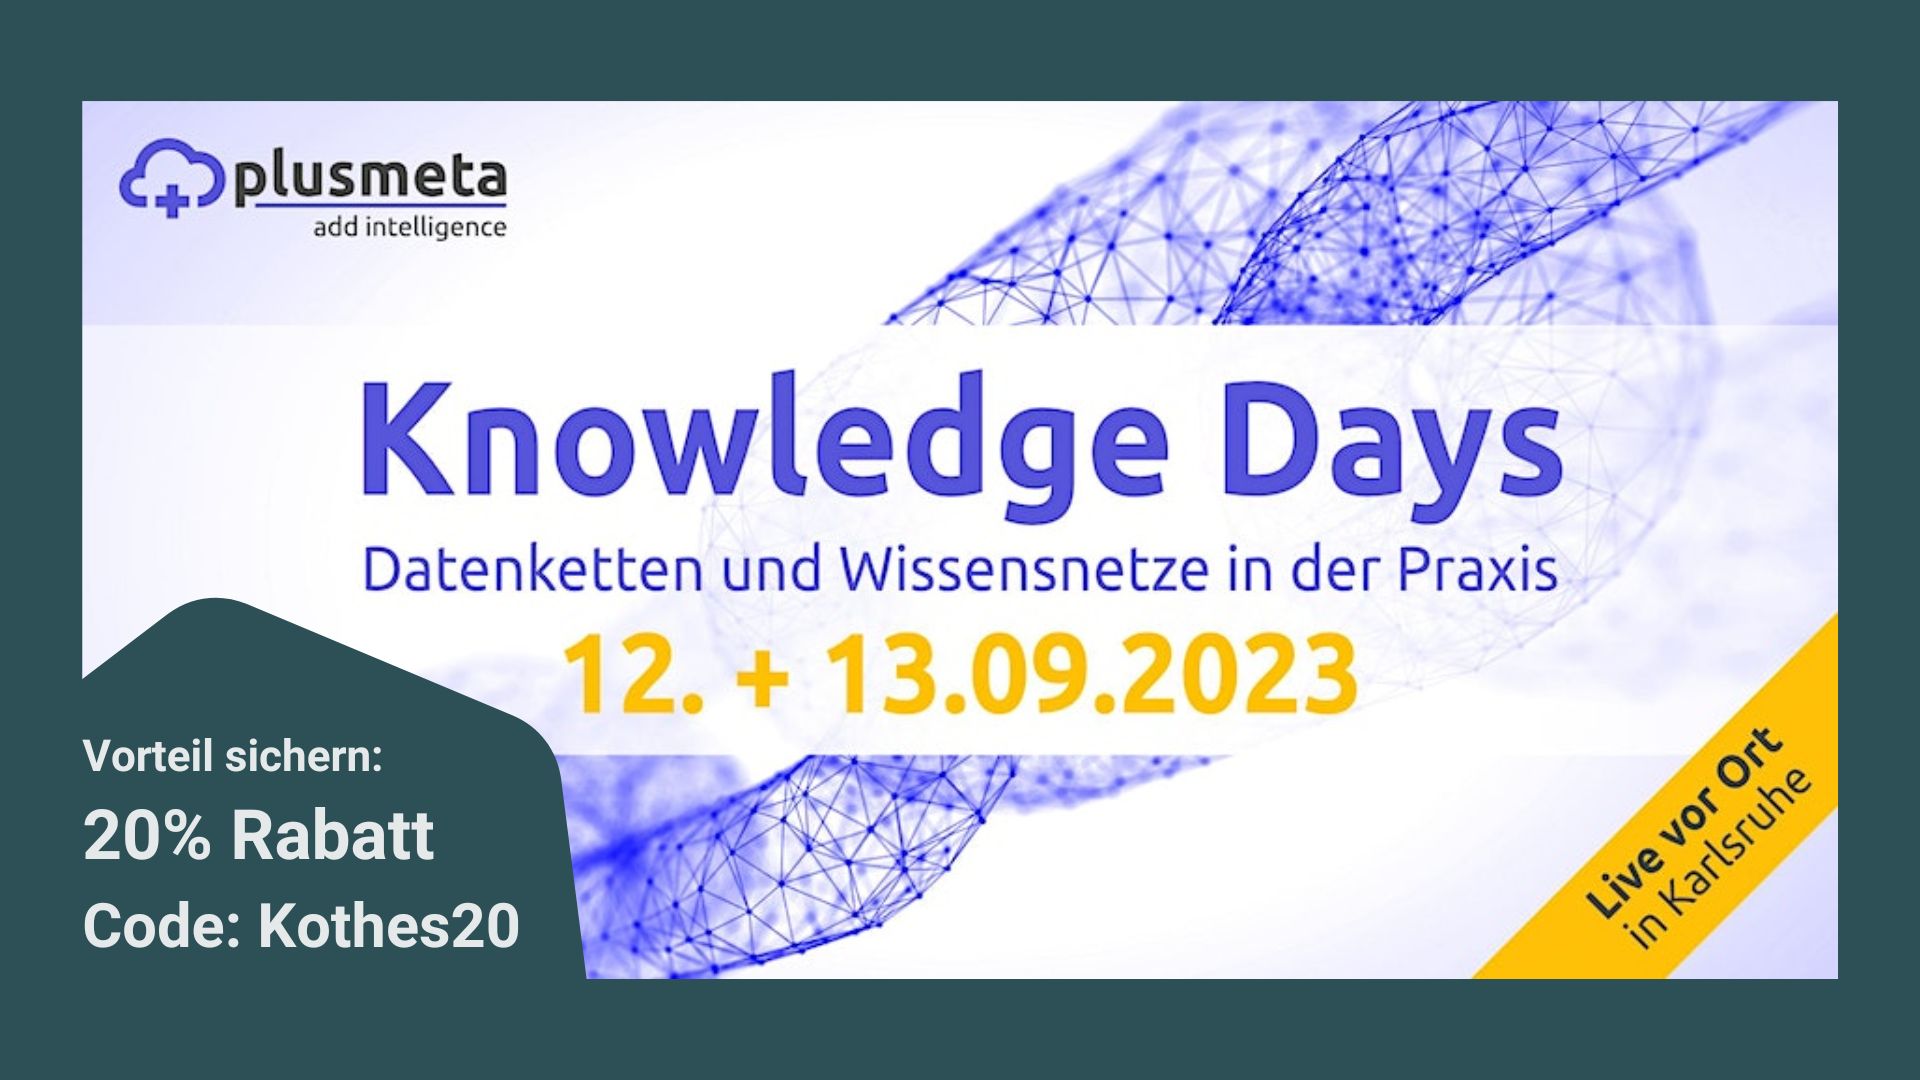 plusmeta Knowledge Days 2023